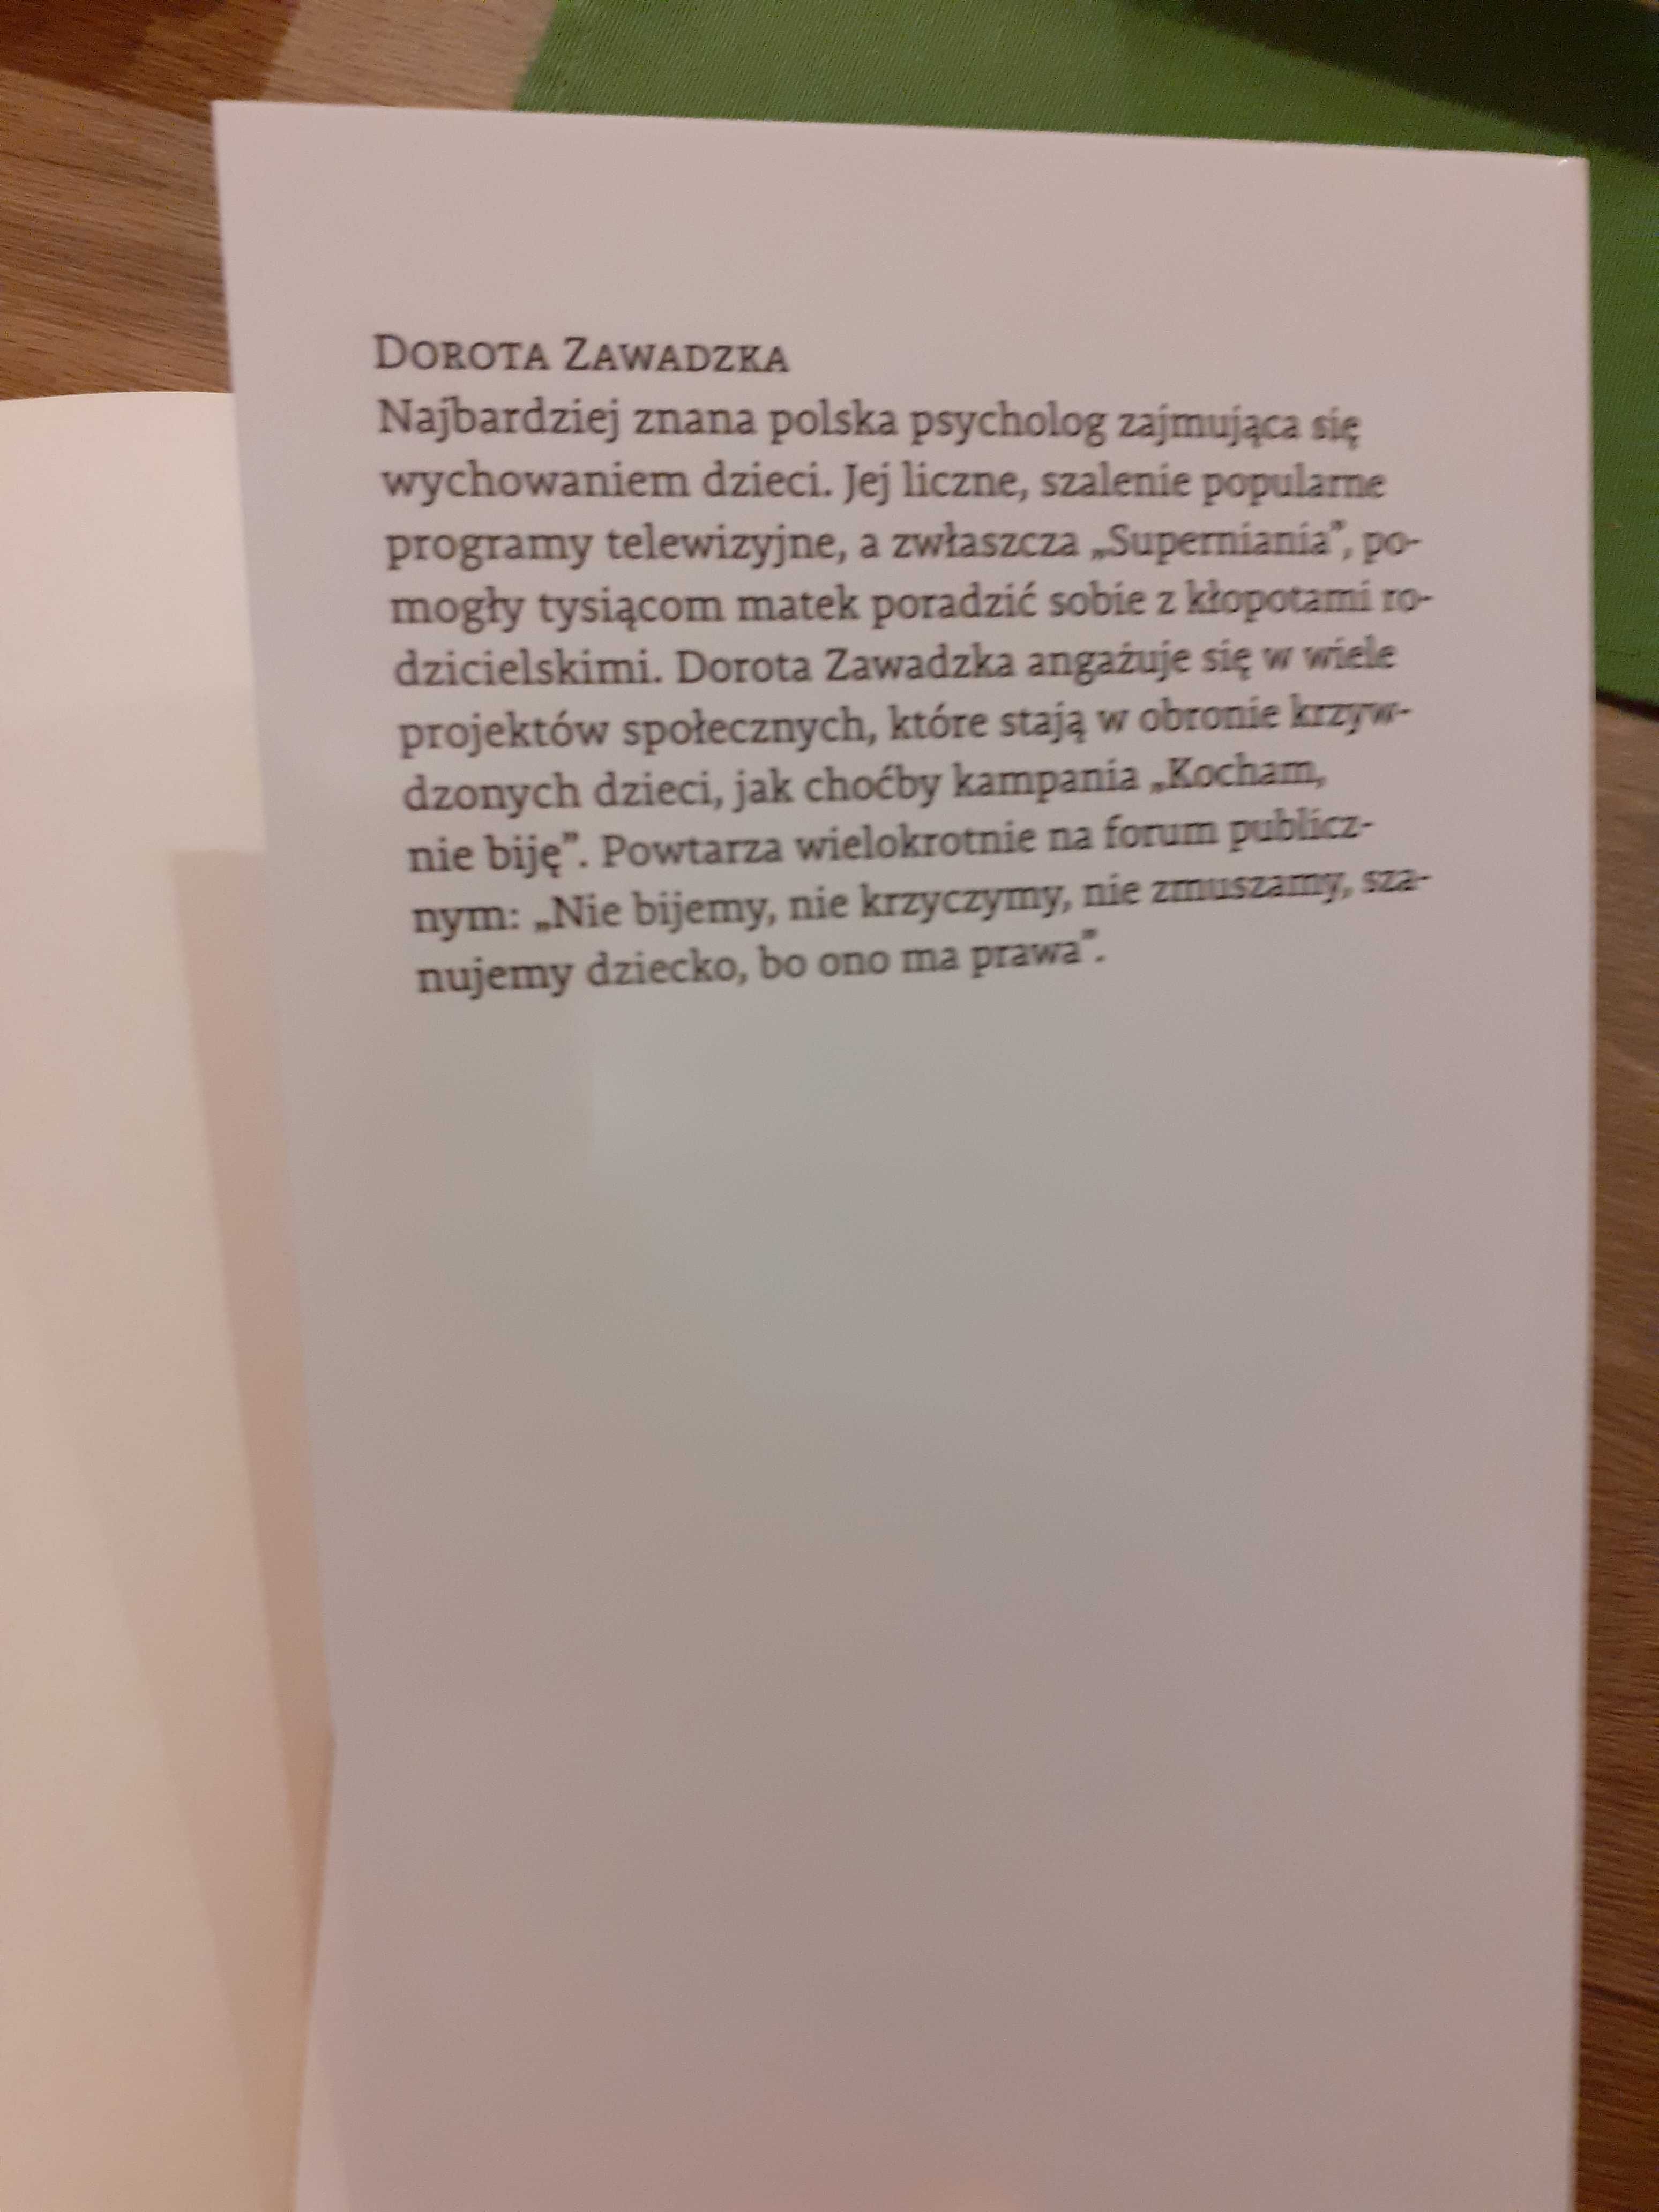 " Jak zostałam niania Polaków" Dorota Zawadzka